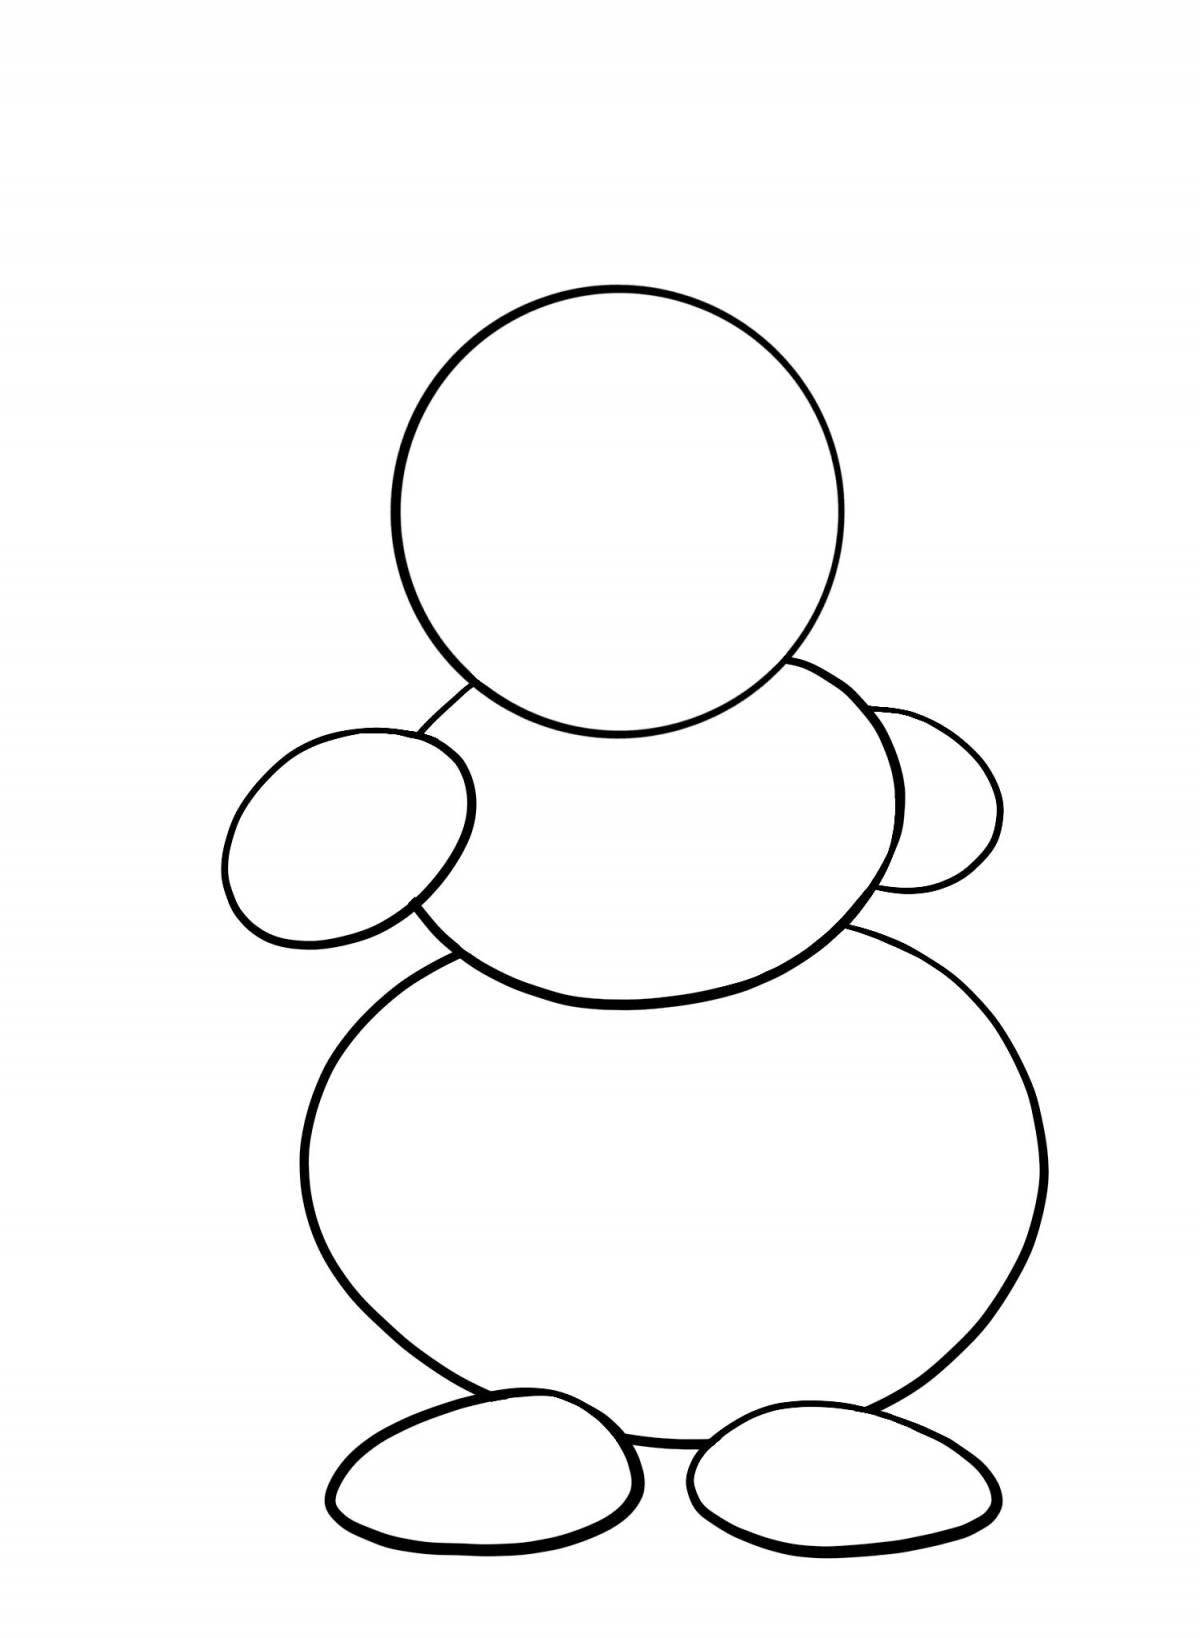 Увлекательная раскраска снеговик для детей 2-3 лет